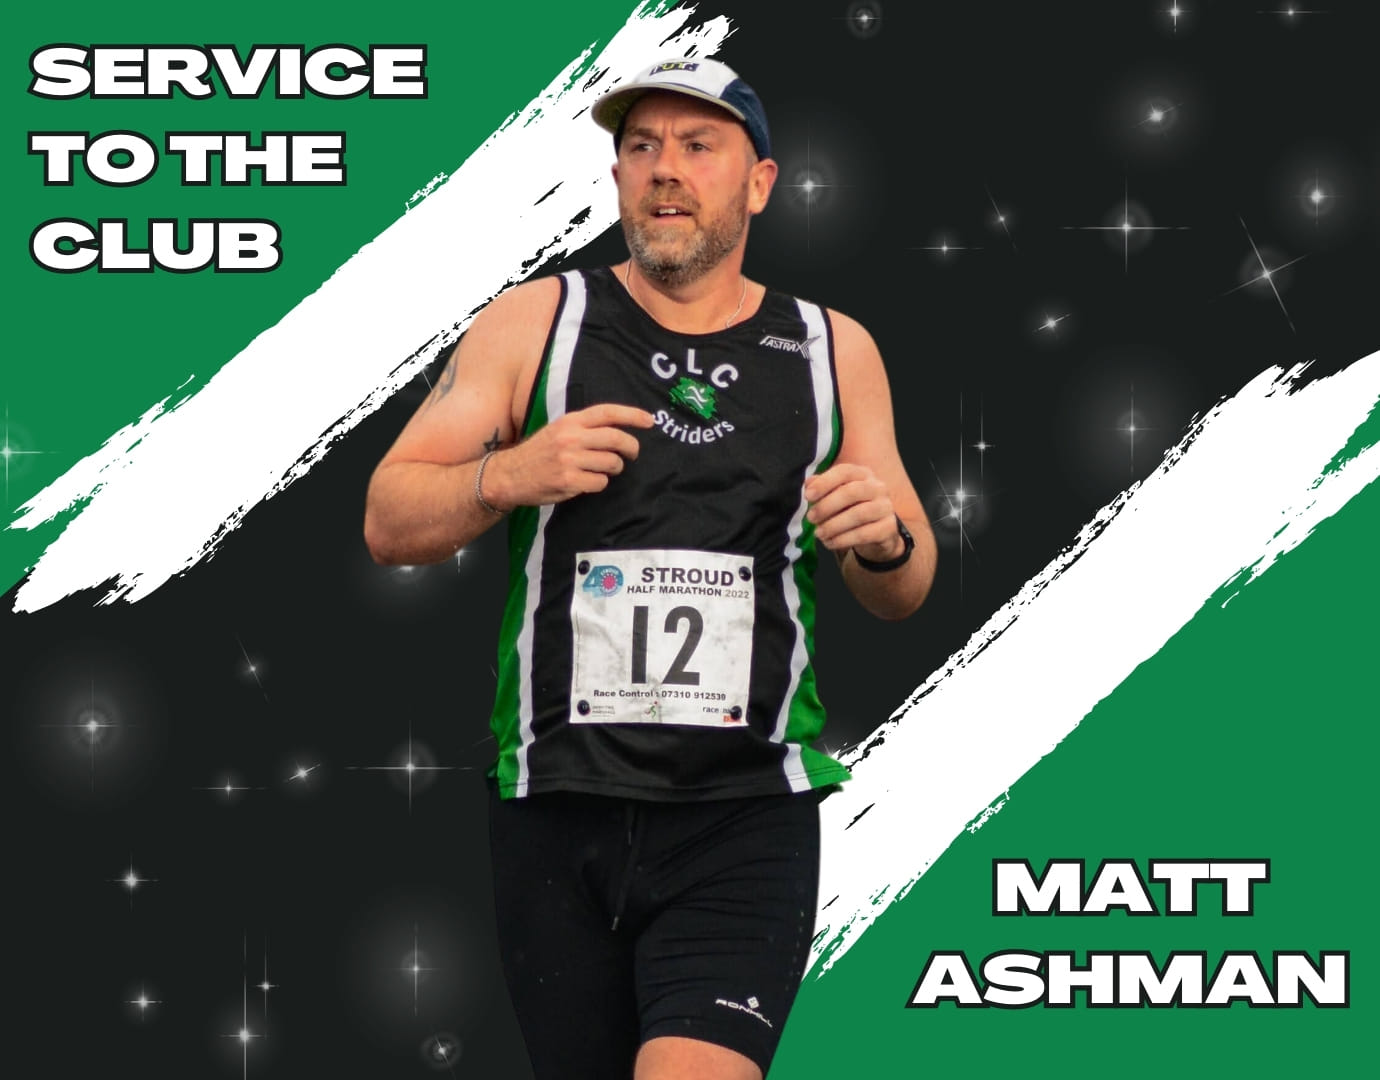 Service Matt Ashman